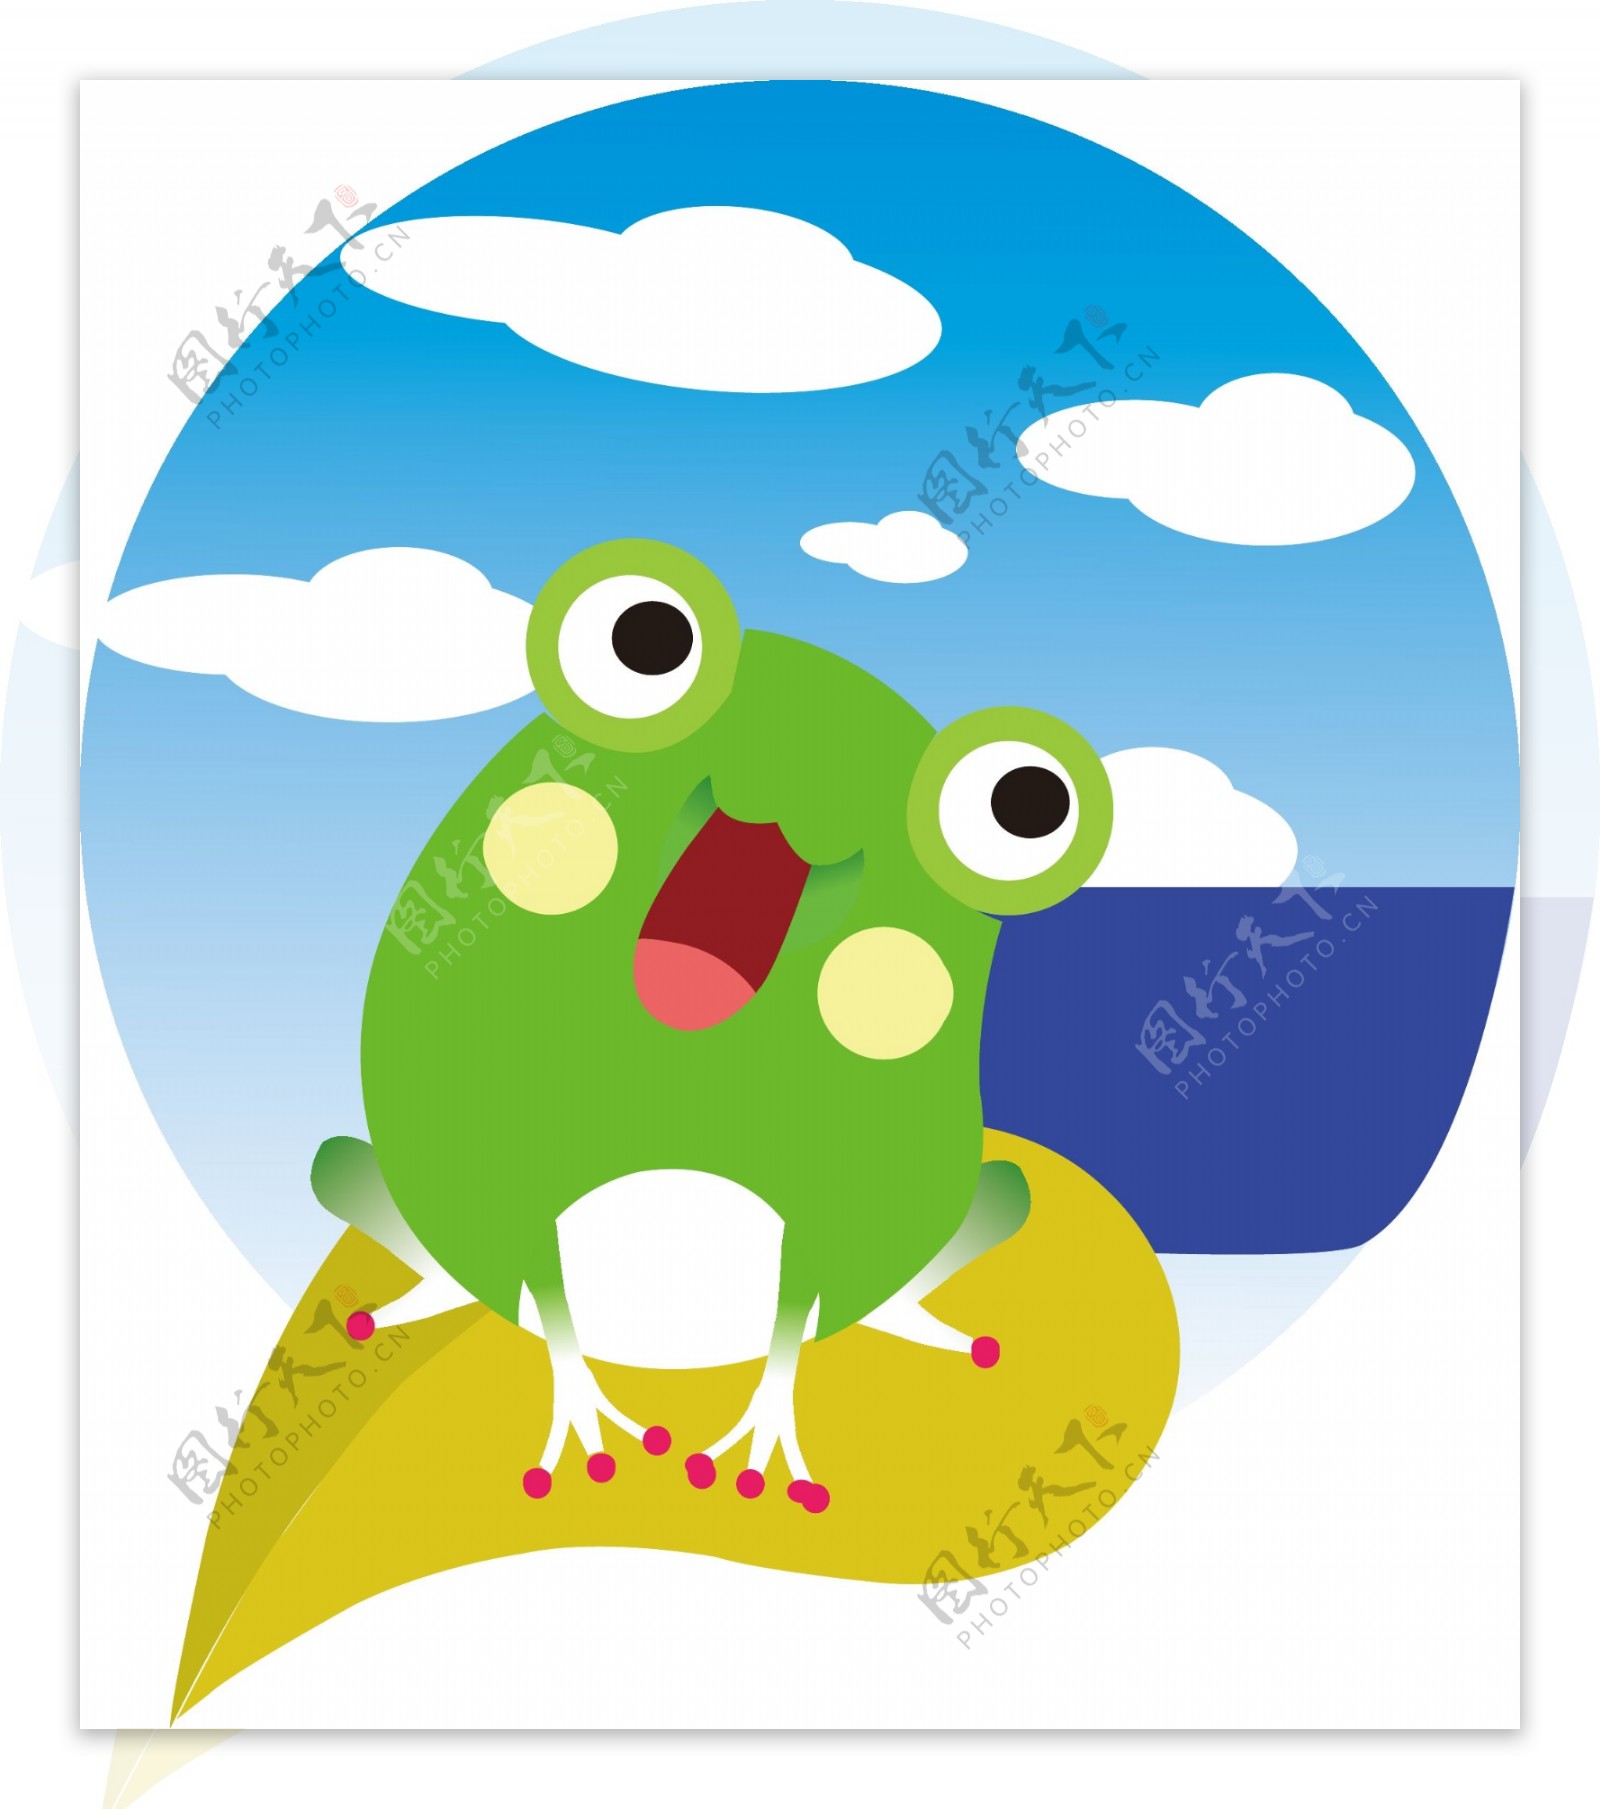 可愛的小青蛙卡通人物, 樂趣, 吉祥物, 飛躍向量圖案素材免費下載，PNG，EPS和AI素材下載 - Pngtree